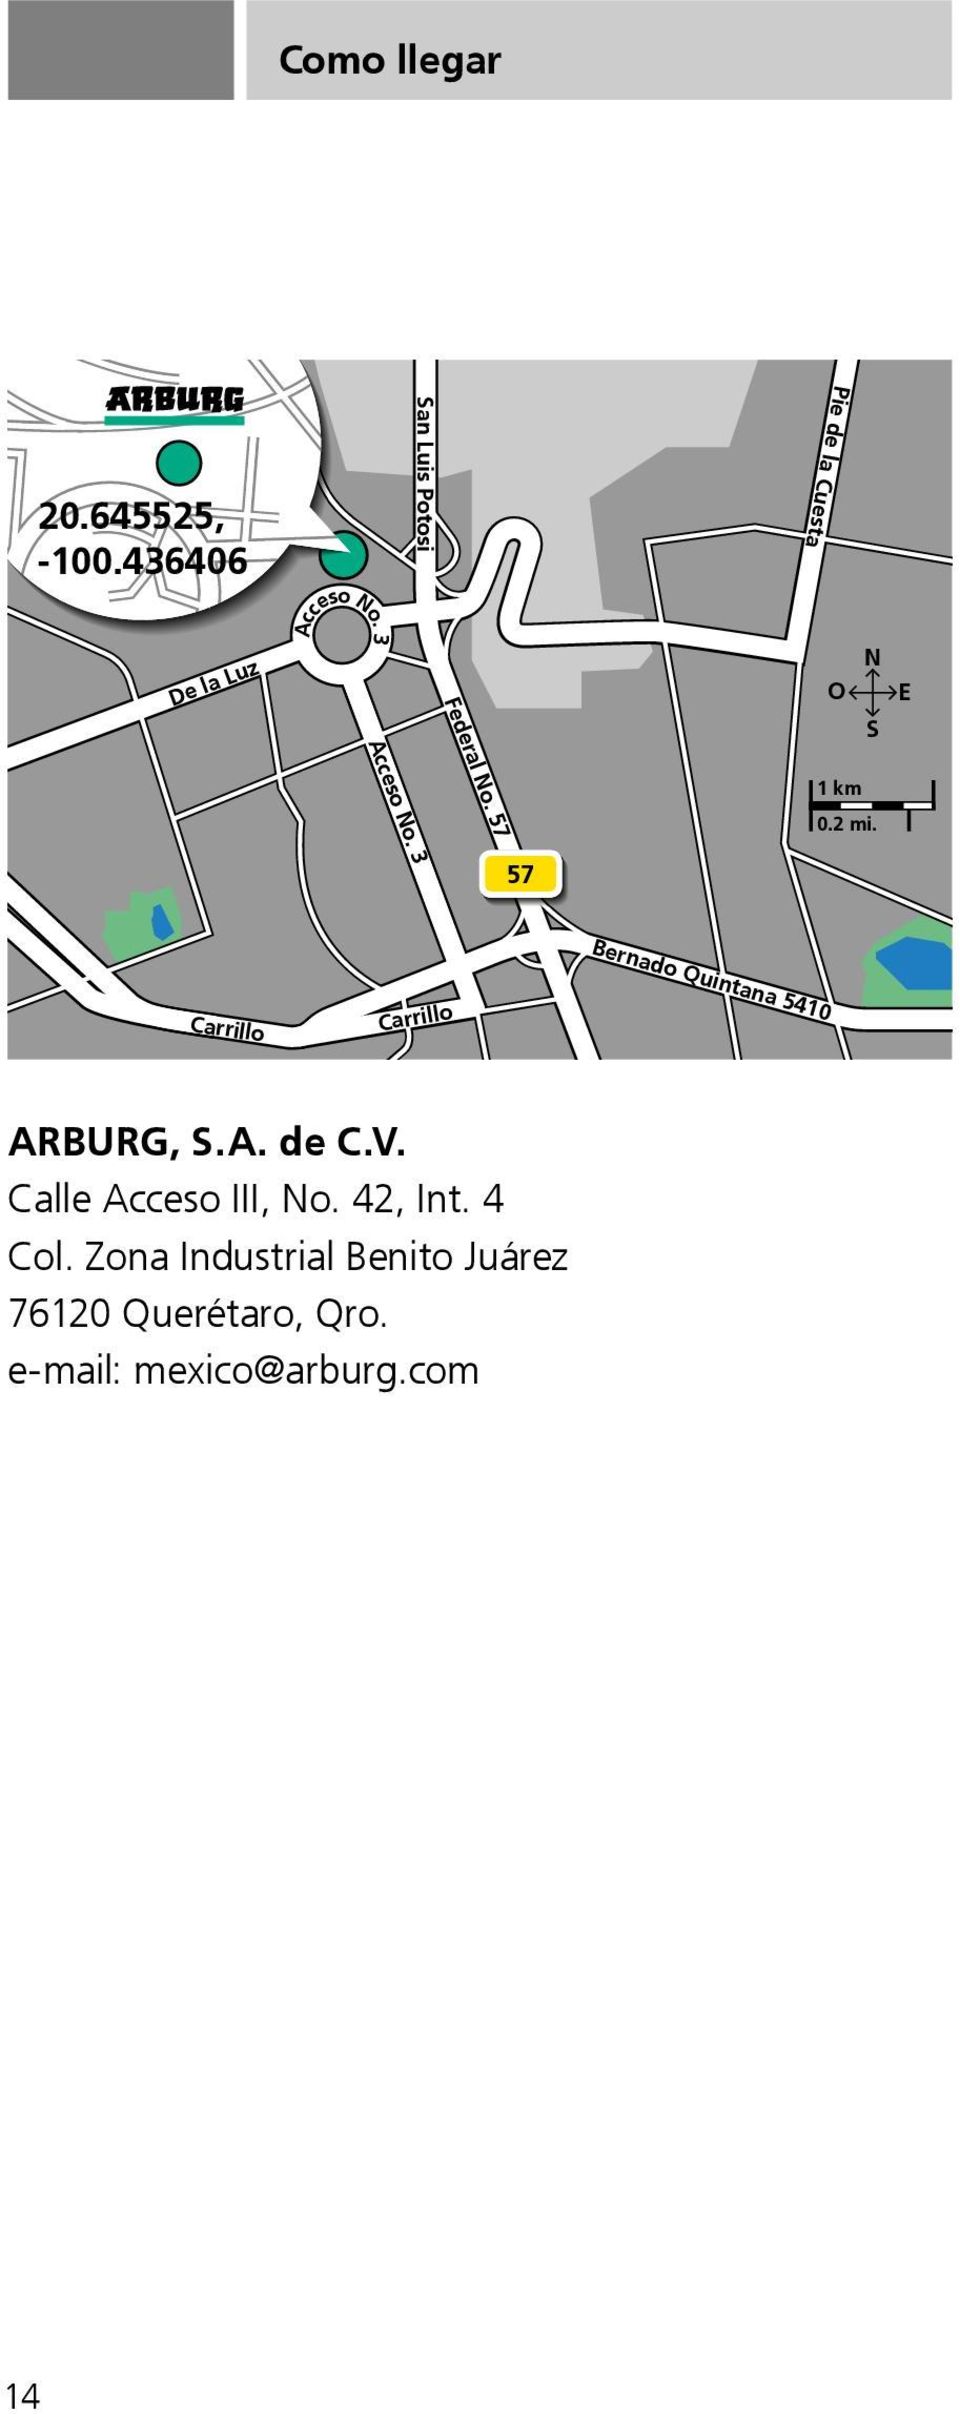 Calle Acceso III, No. 42, Int. 4 ARBURG, Zona Industrial S.A. Benito de C.V. Juárez 76120 Querétaro, Qro.